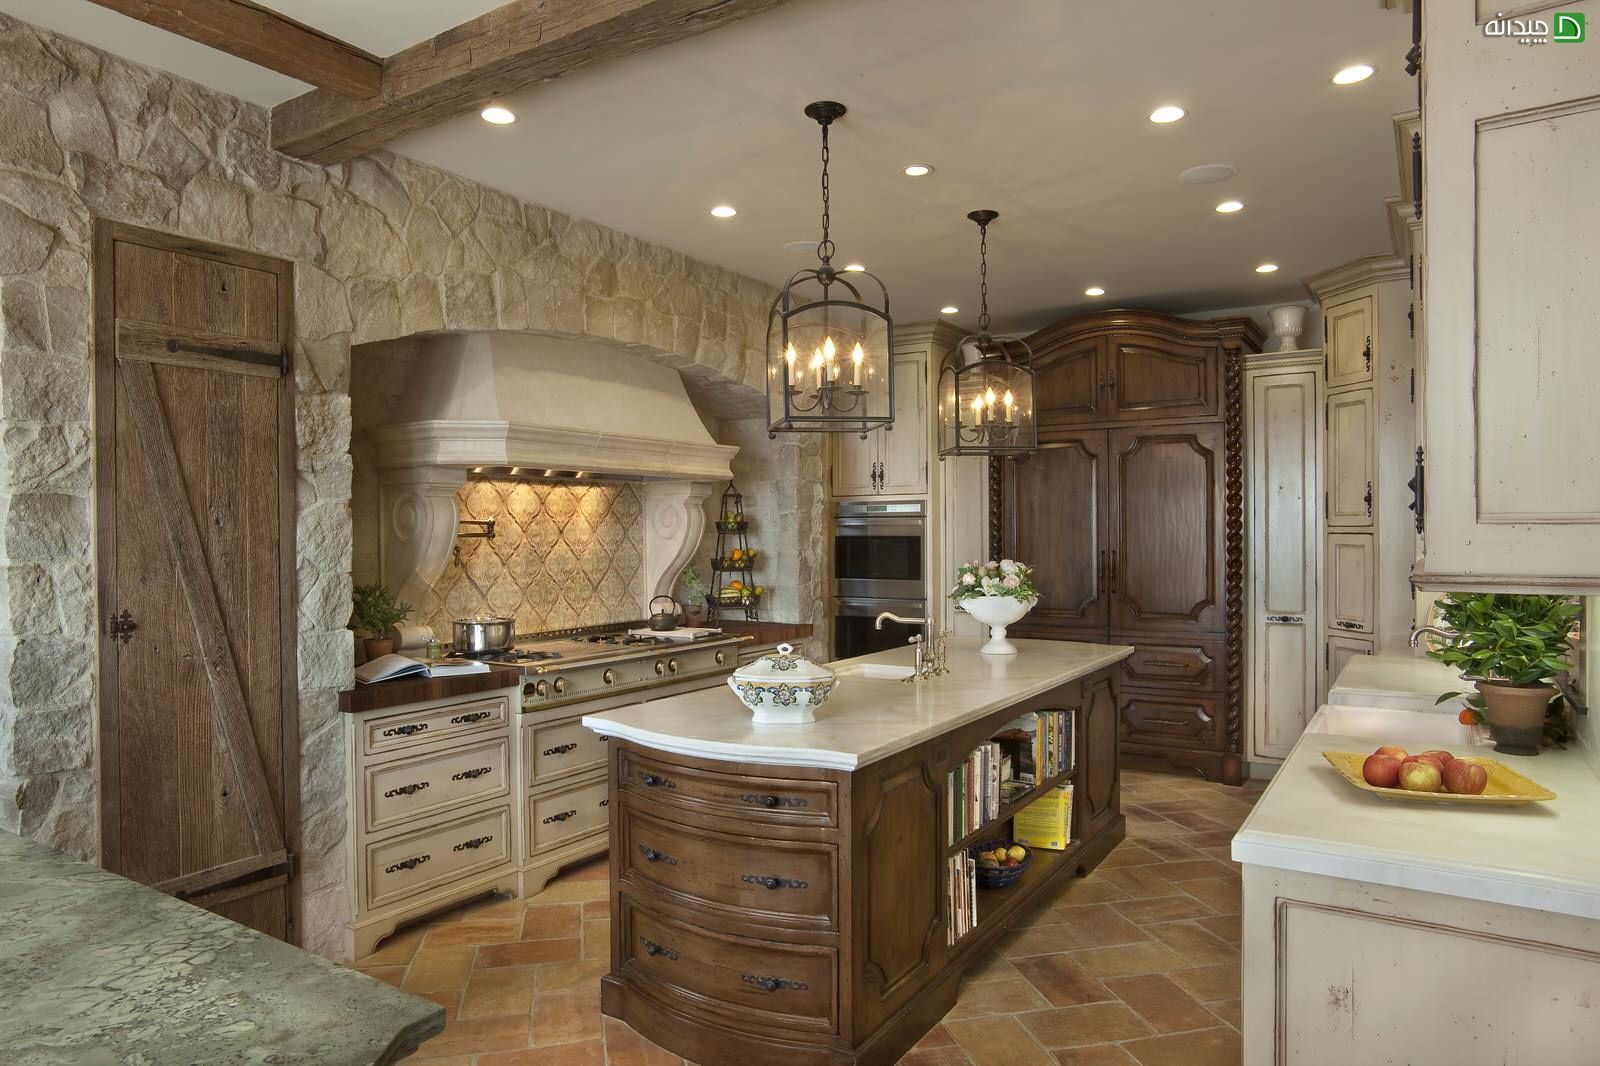 quality stone & kitchen design